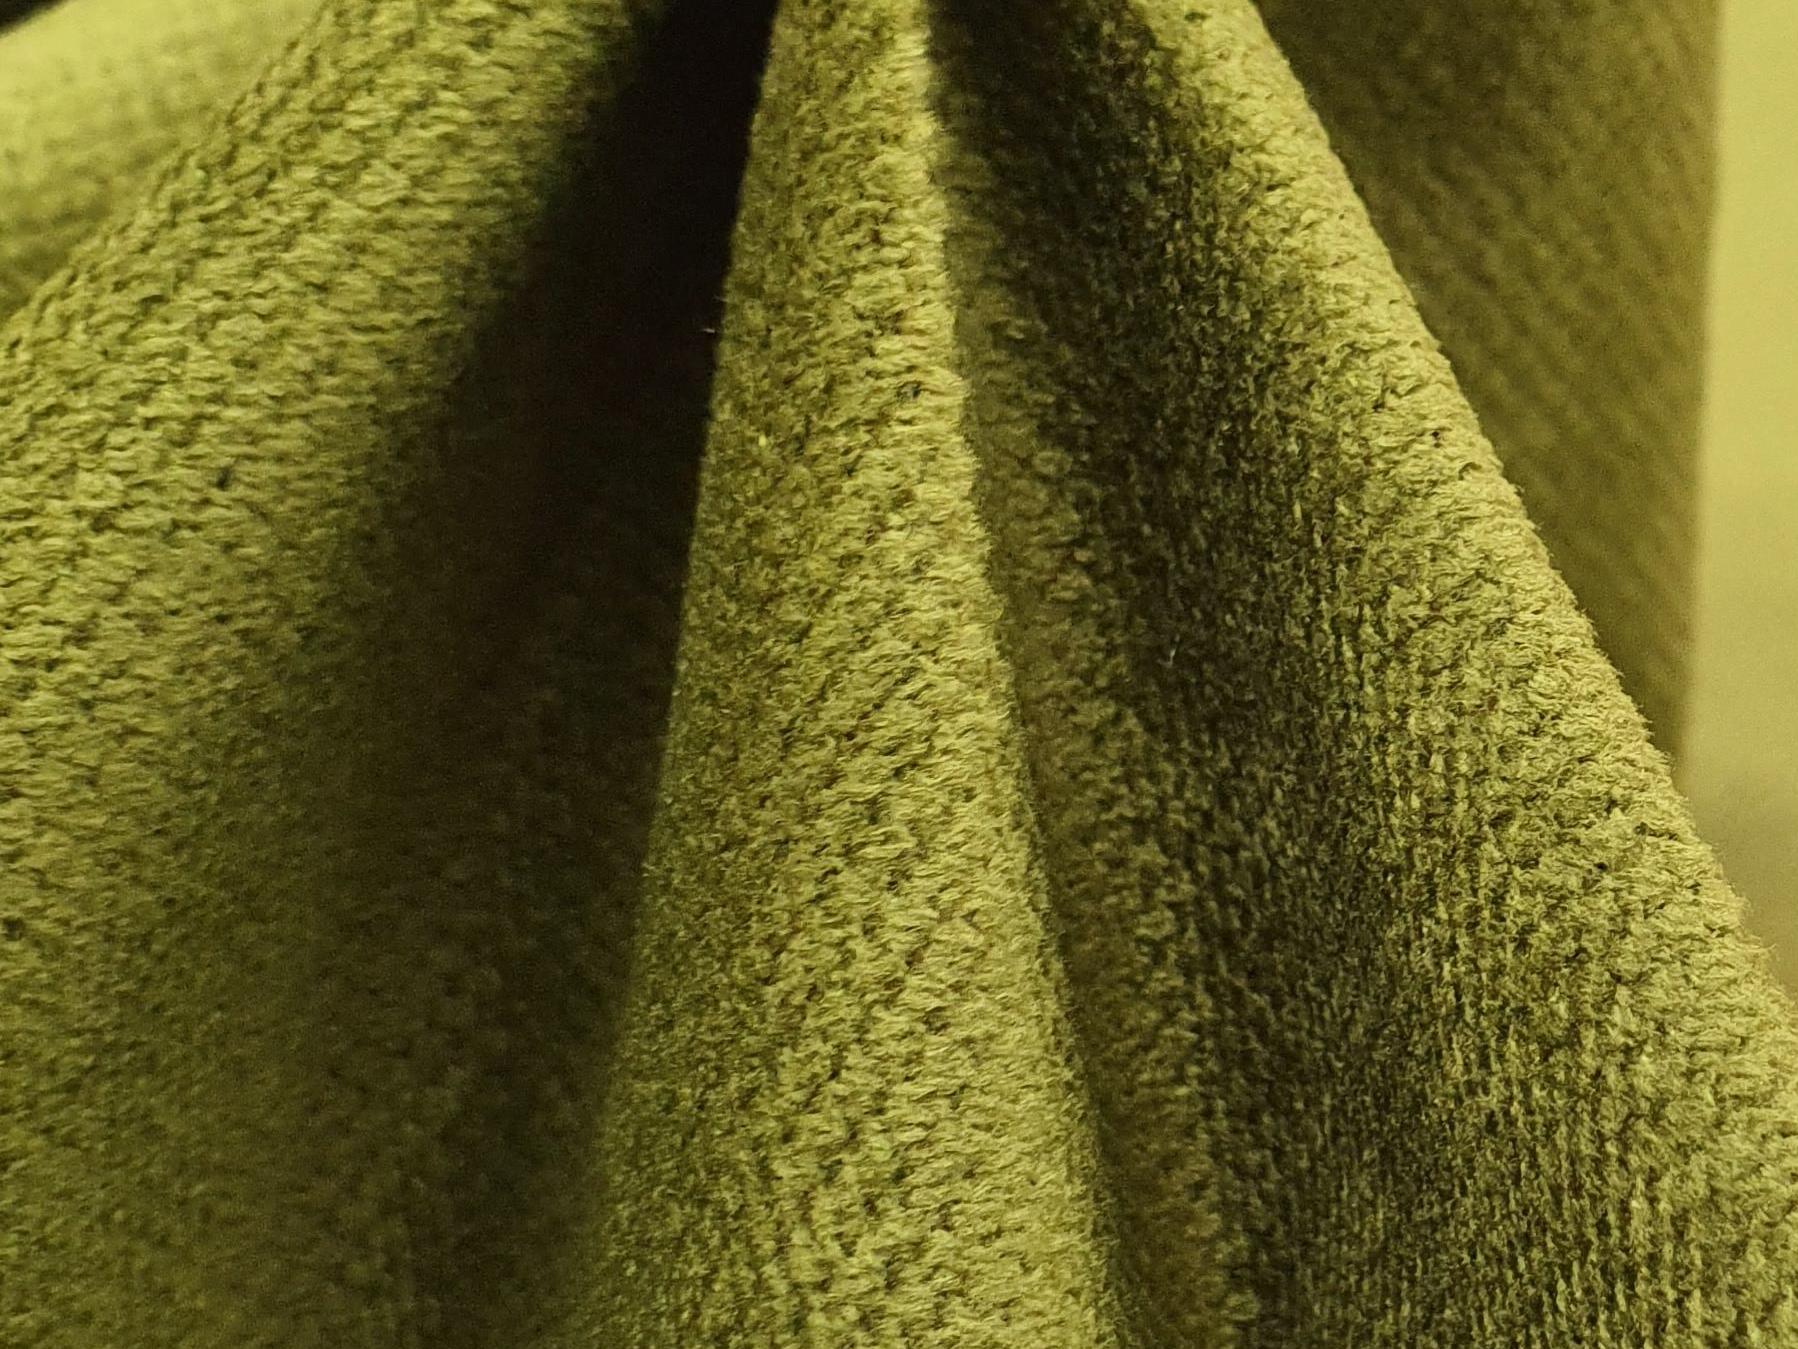 П-образный диван Валенсия (Зеленый)